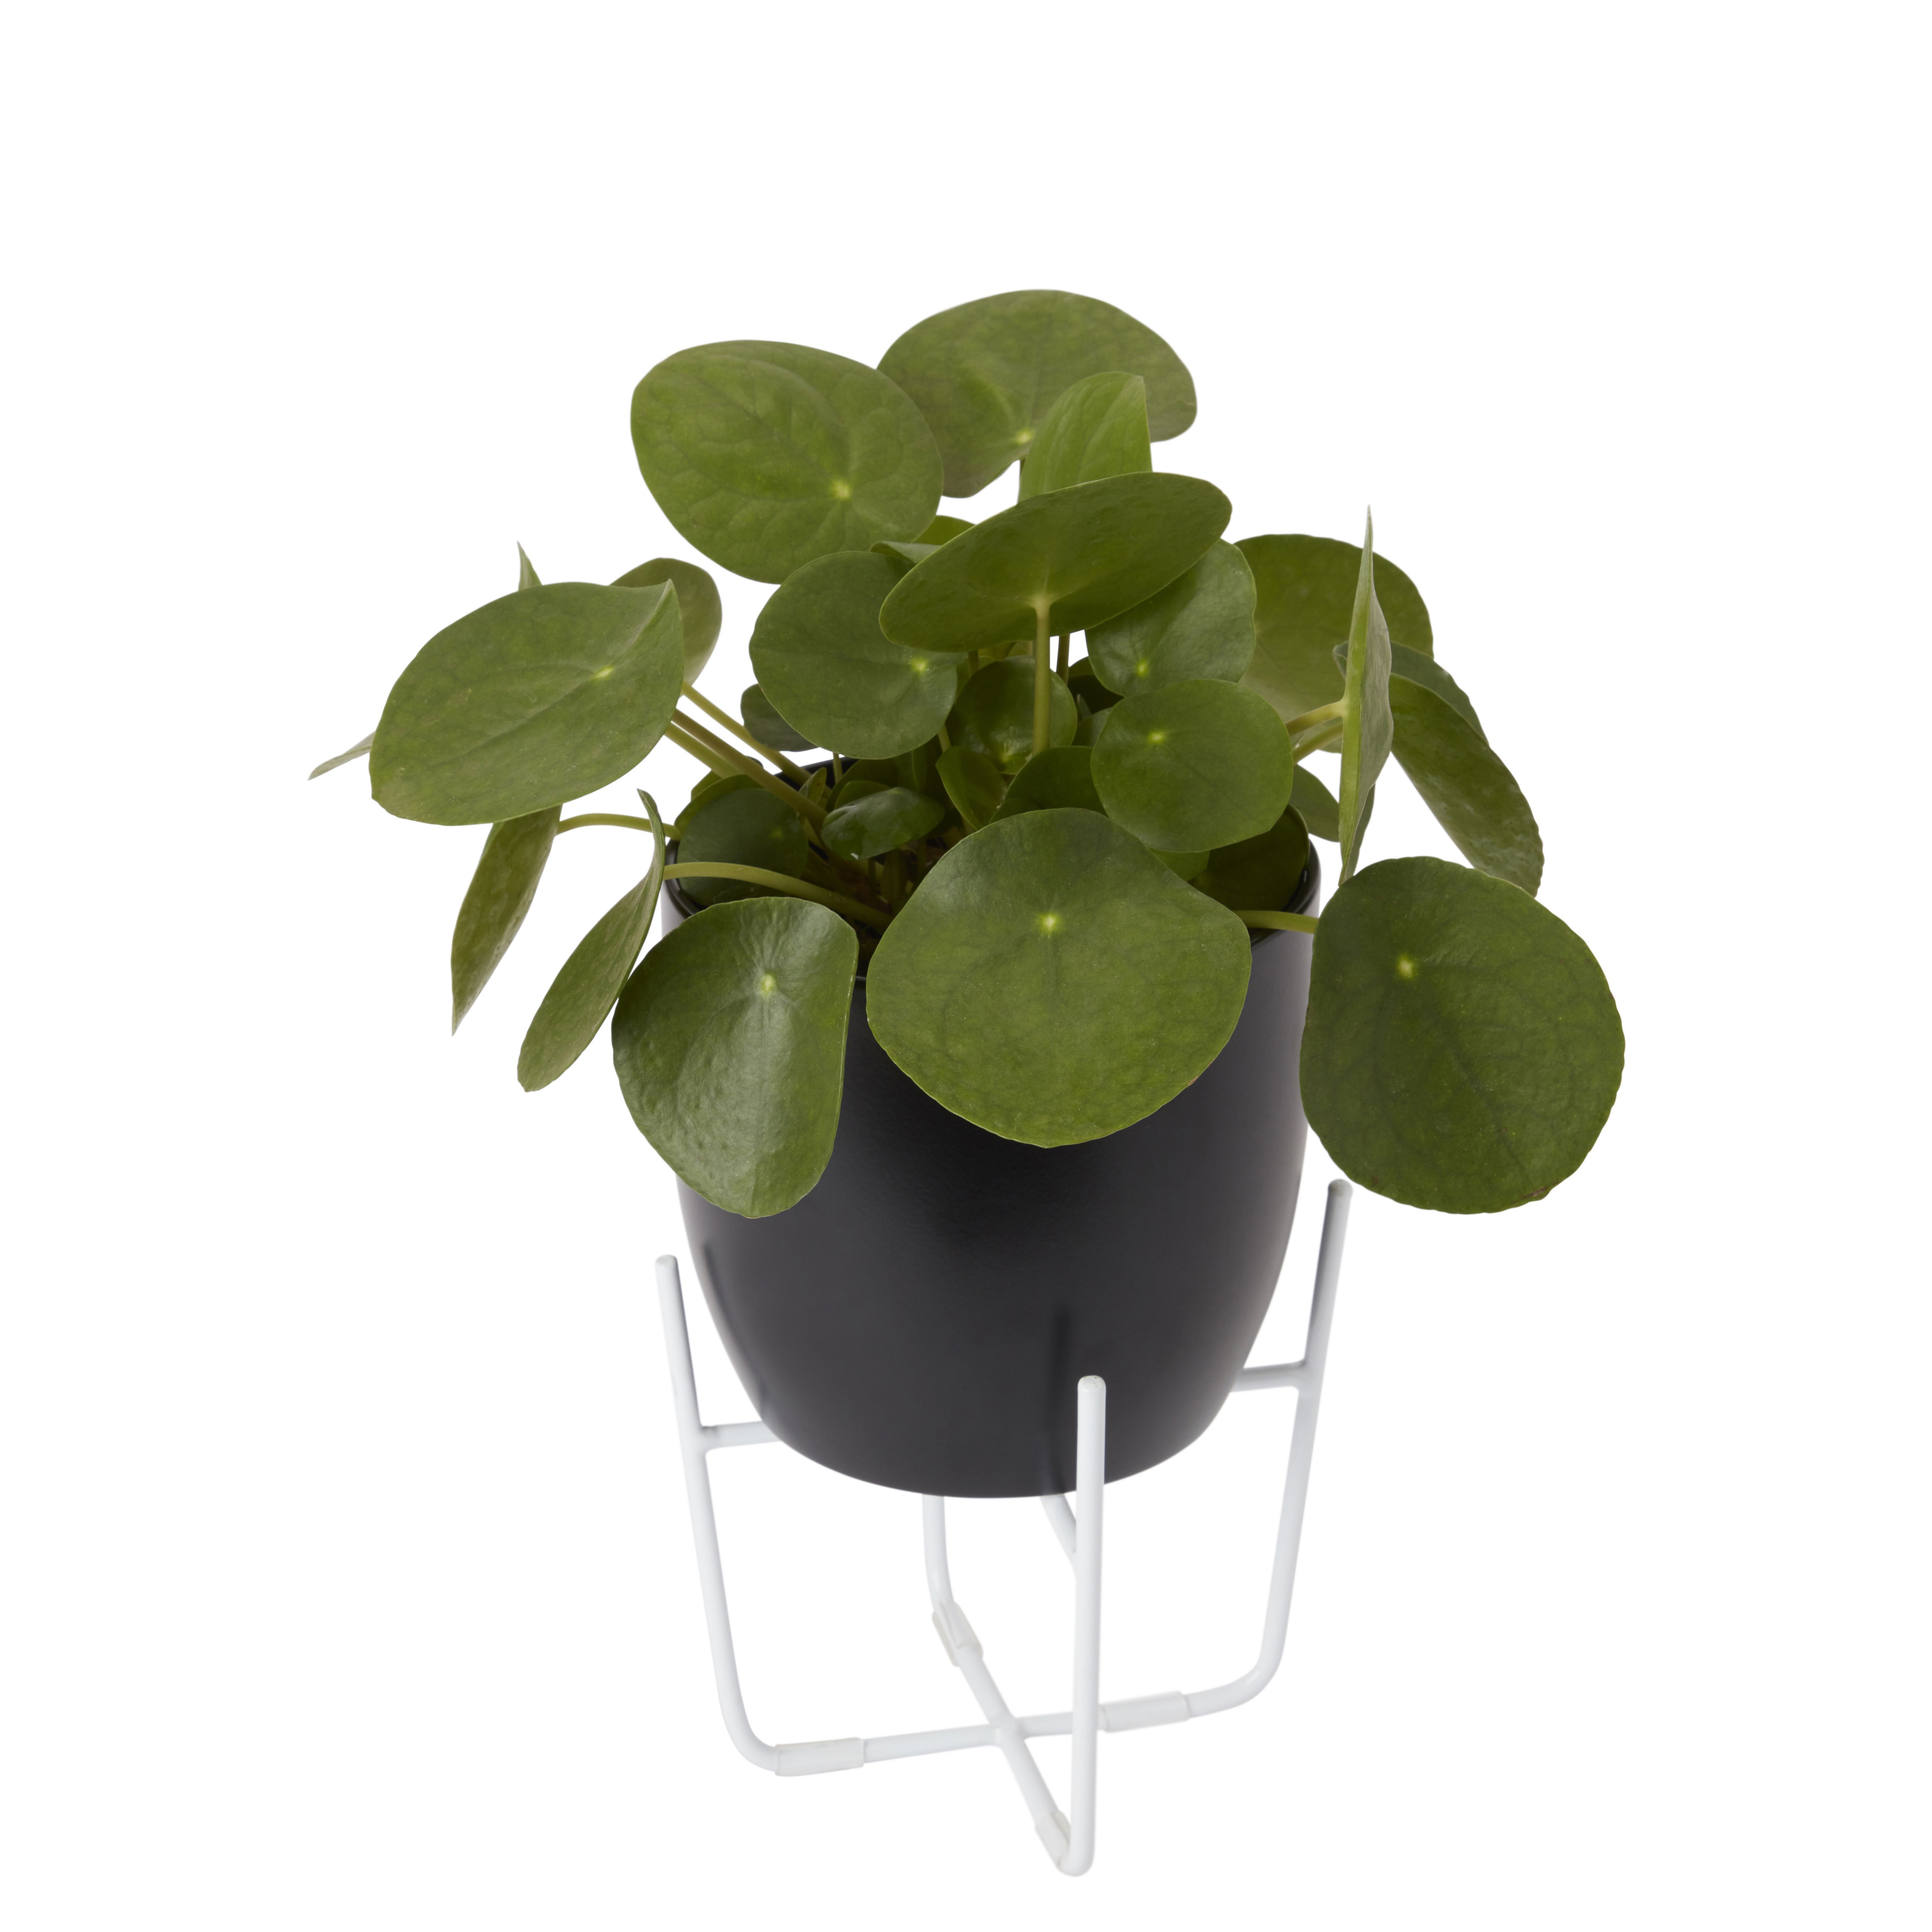 Black Ceramic Circular Plant pot (Dia)14.4cm